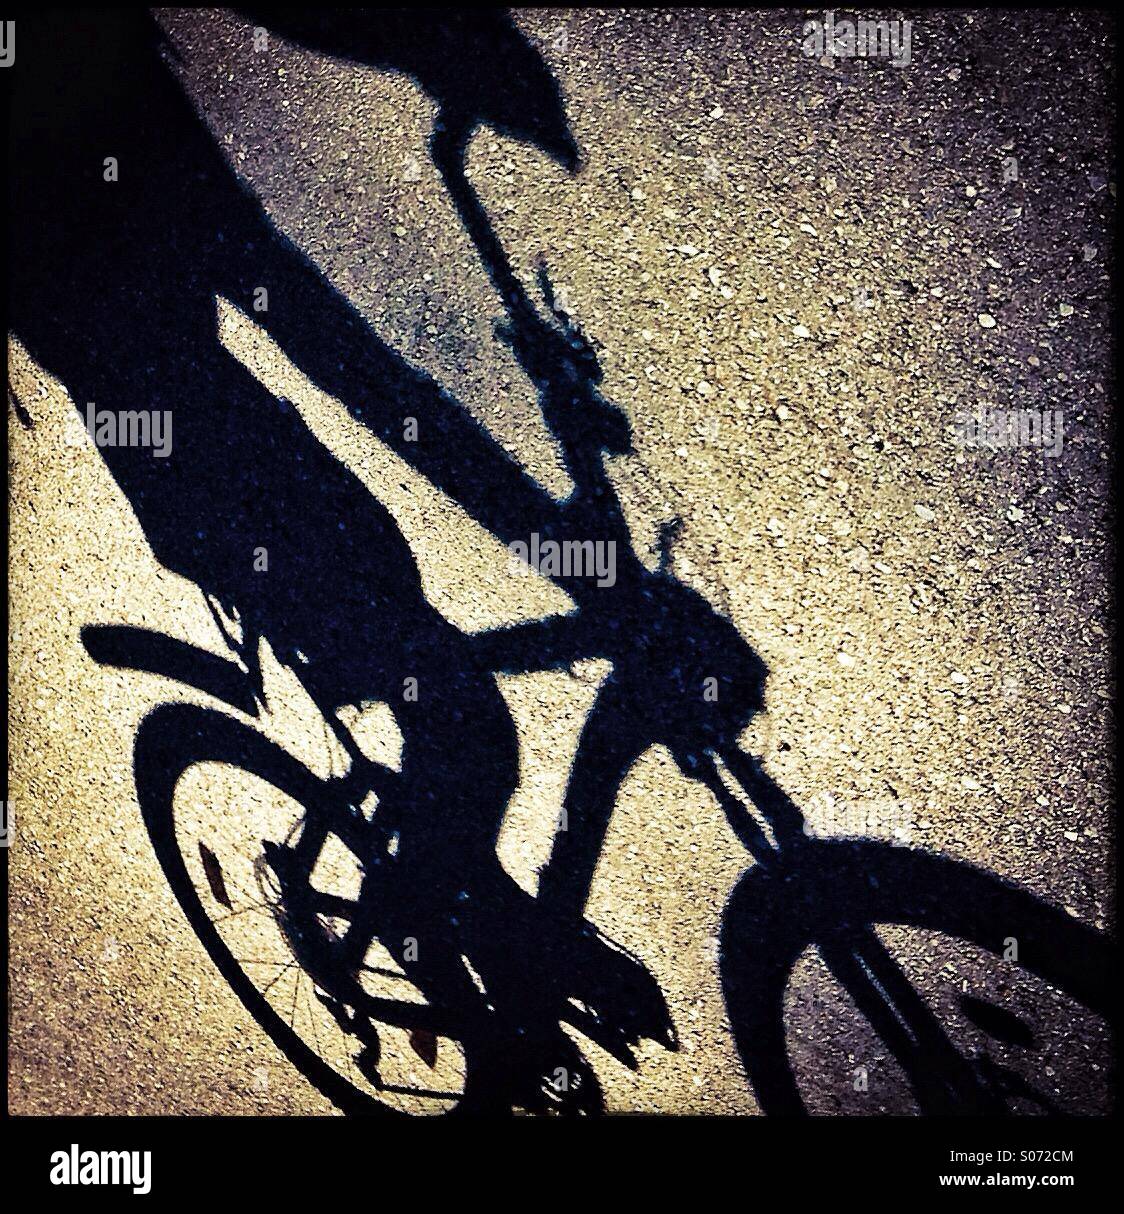 Schatten von einem Fahrrad auf einem Weg Stockfoto